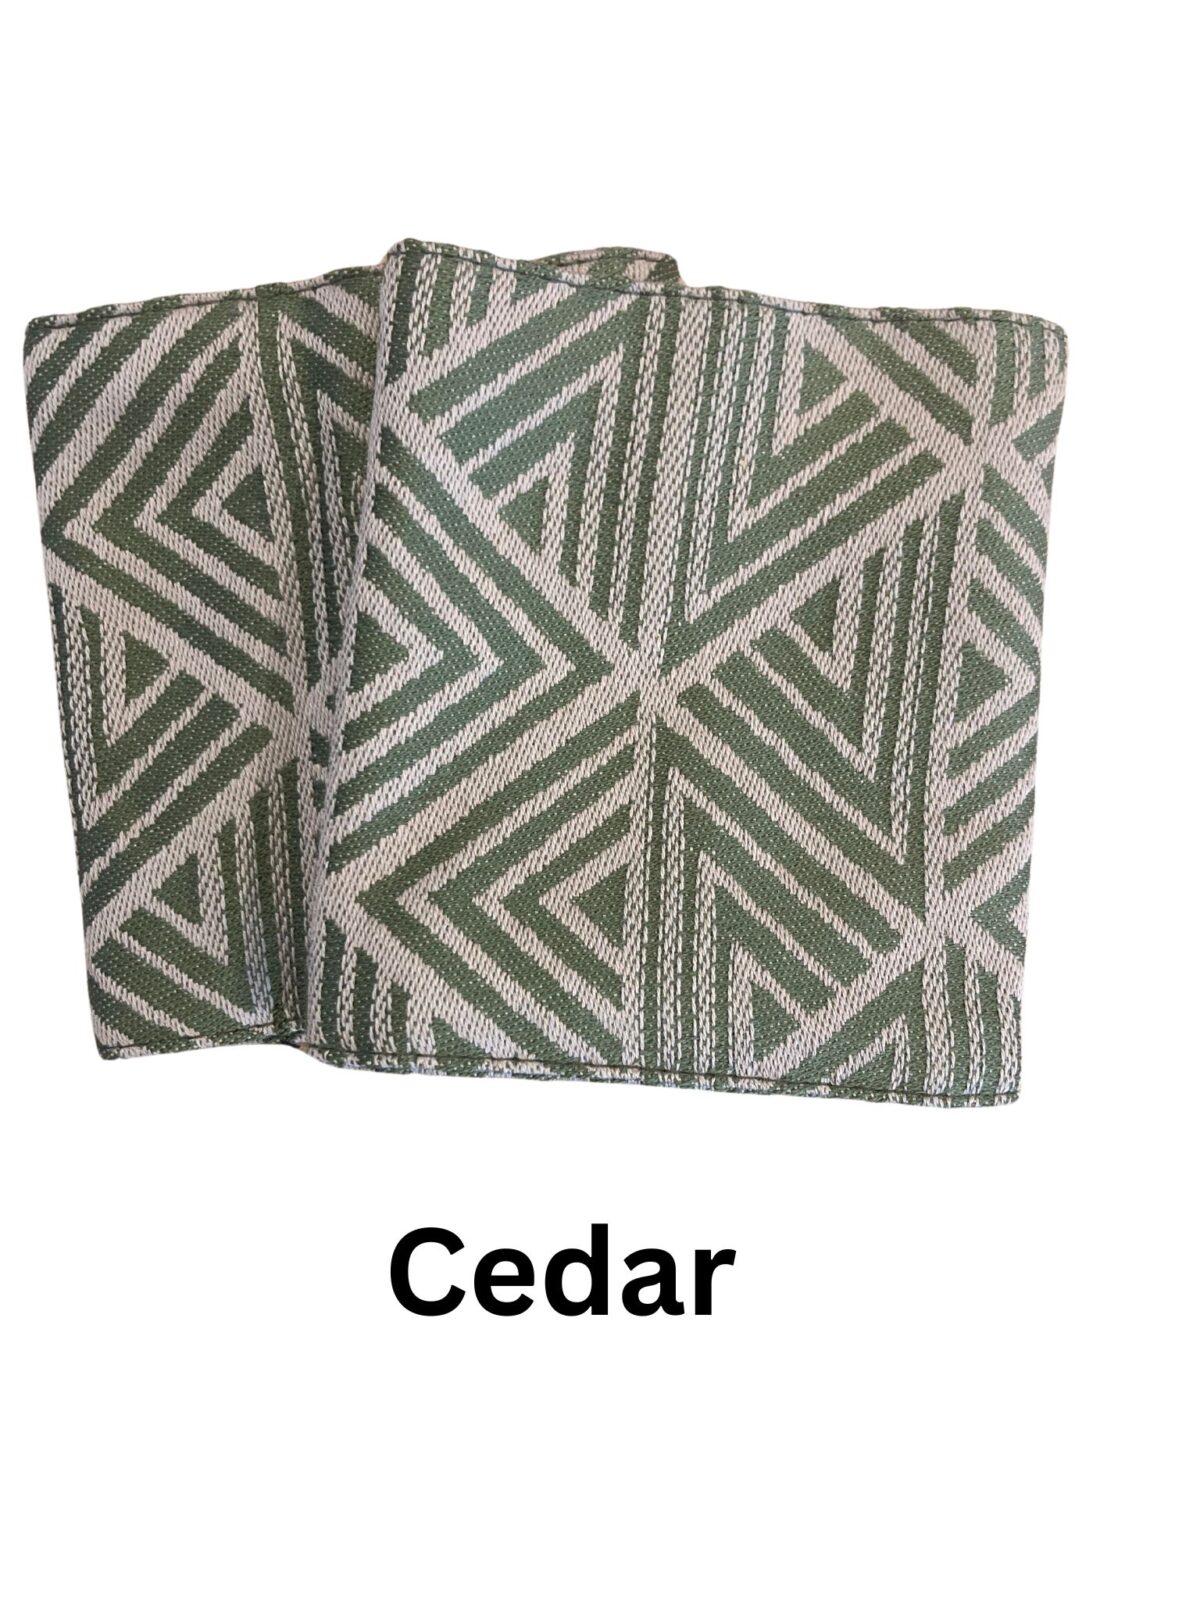 Teething Pads, Cedar